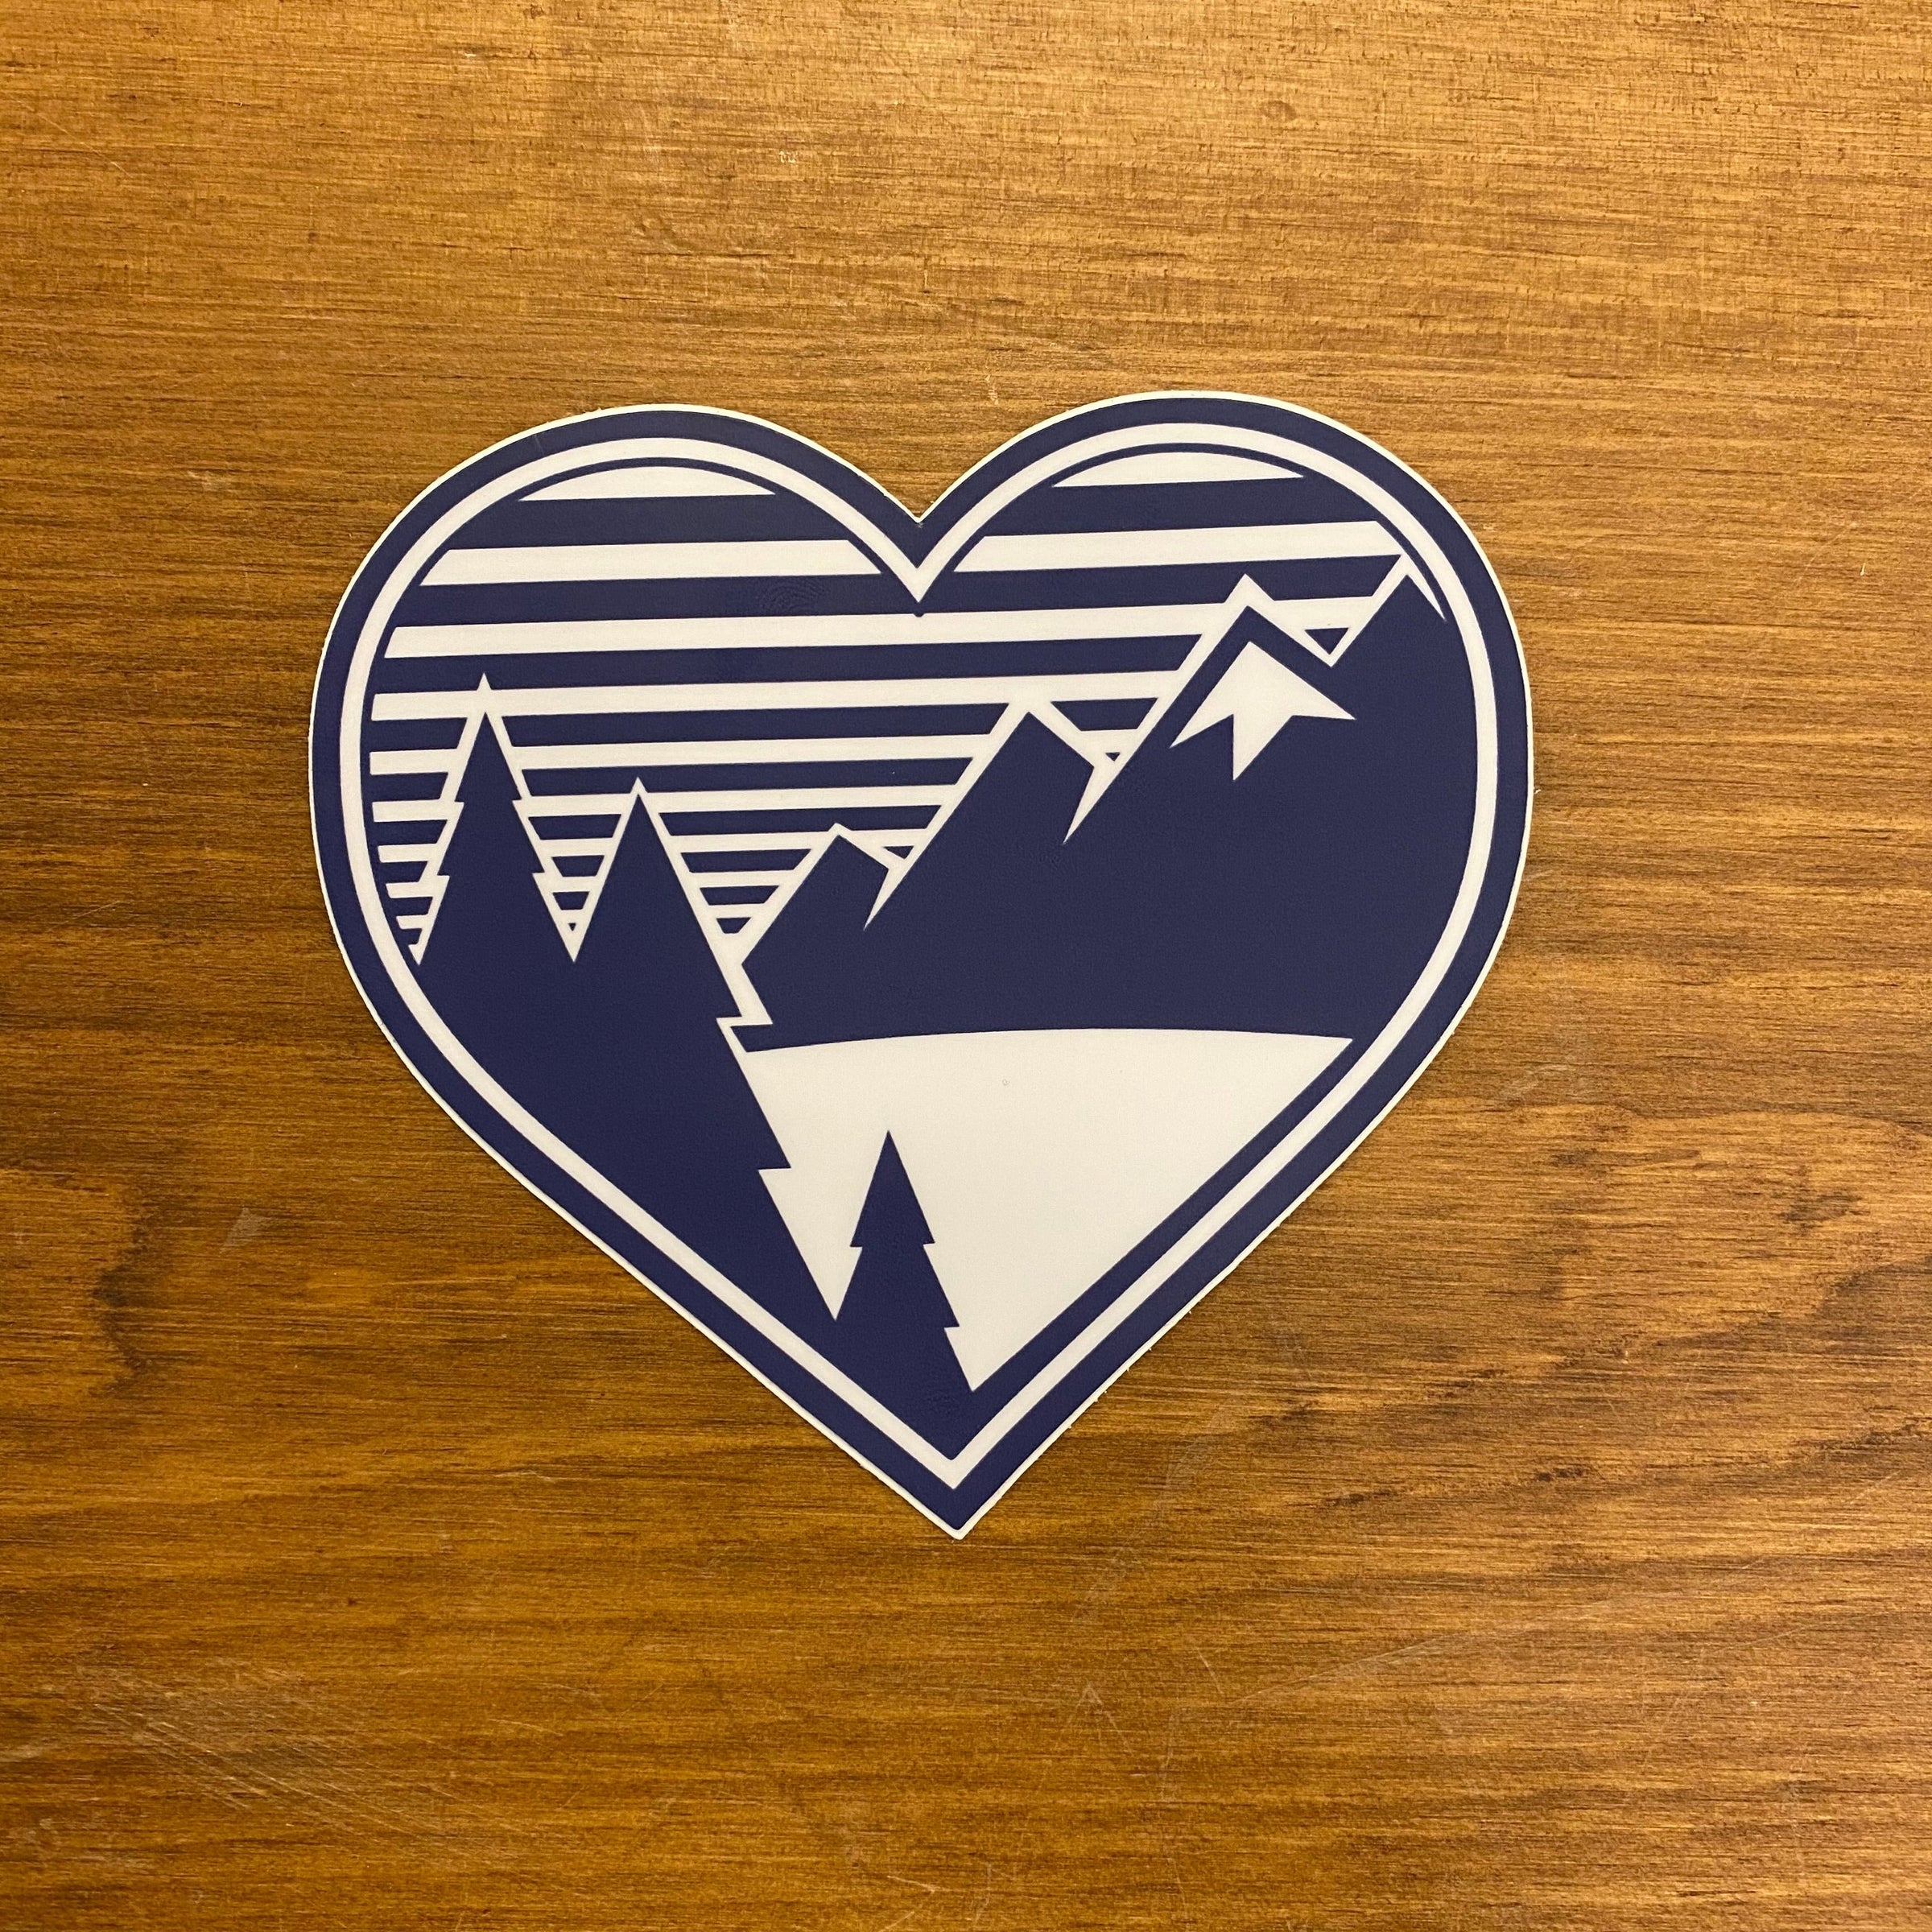 The Mountain Air Heart Sticker